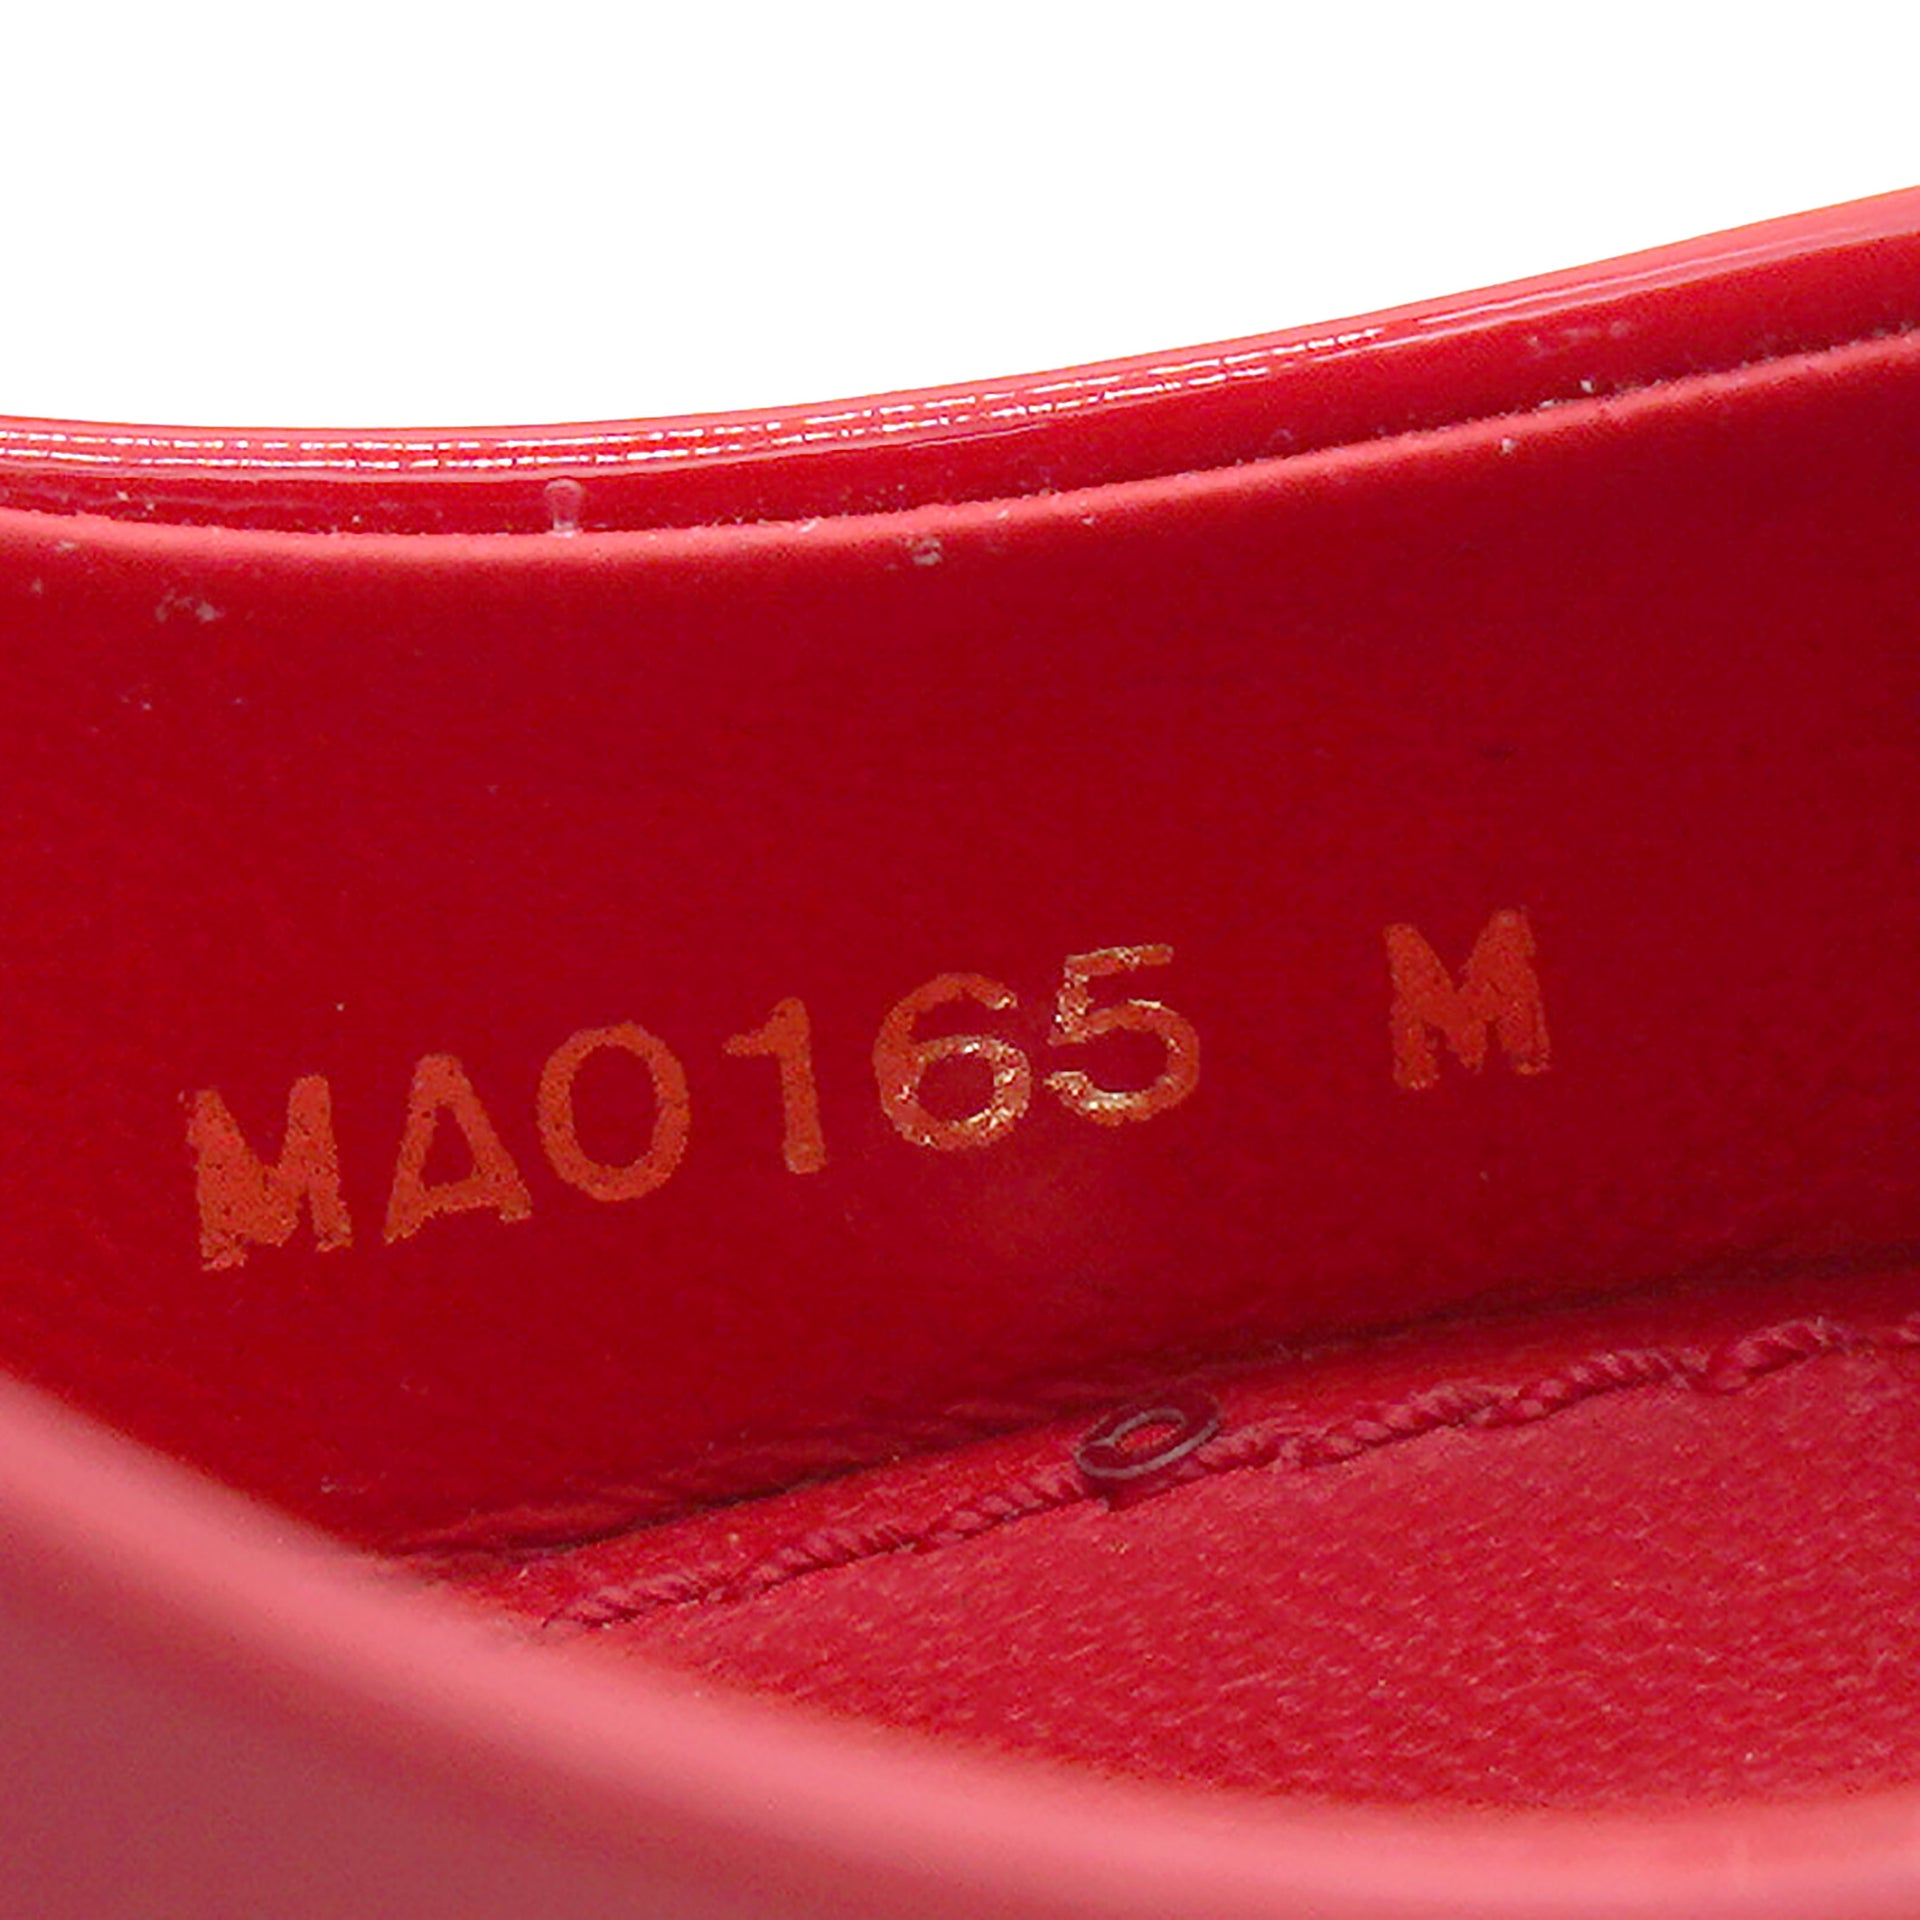 Louis Vuitton Red Patent Leather Dice Pumps Size 37 Louis Vuitton